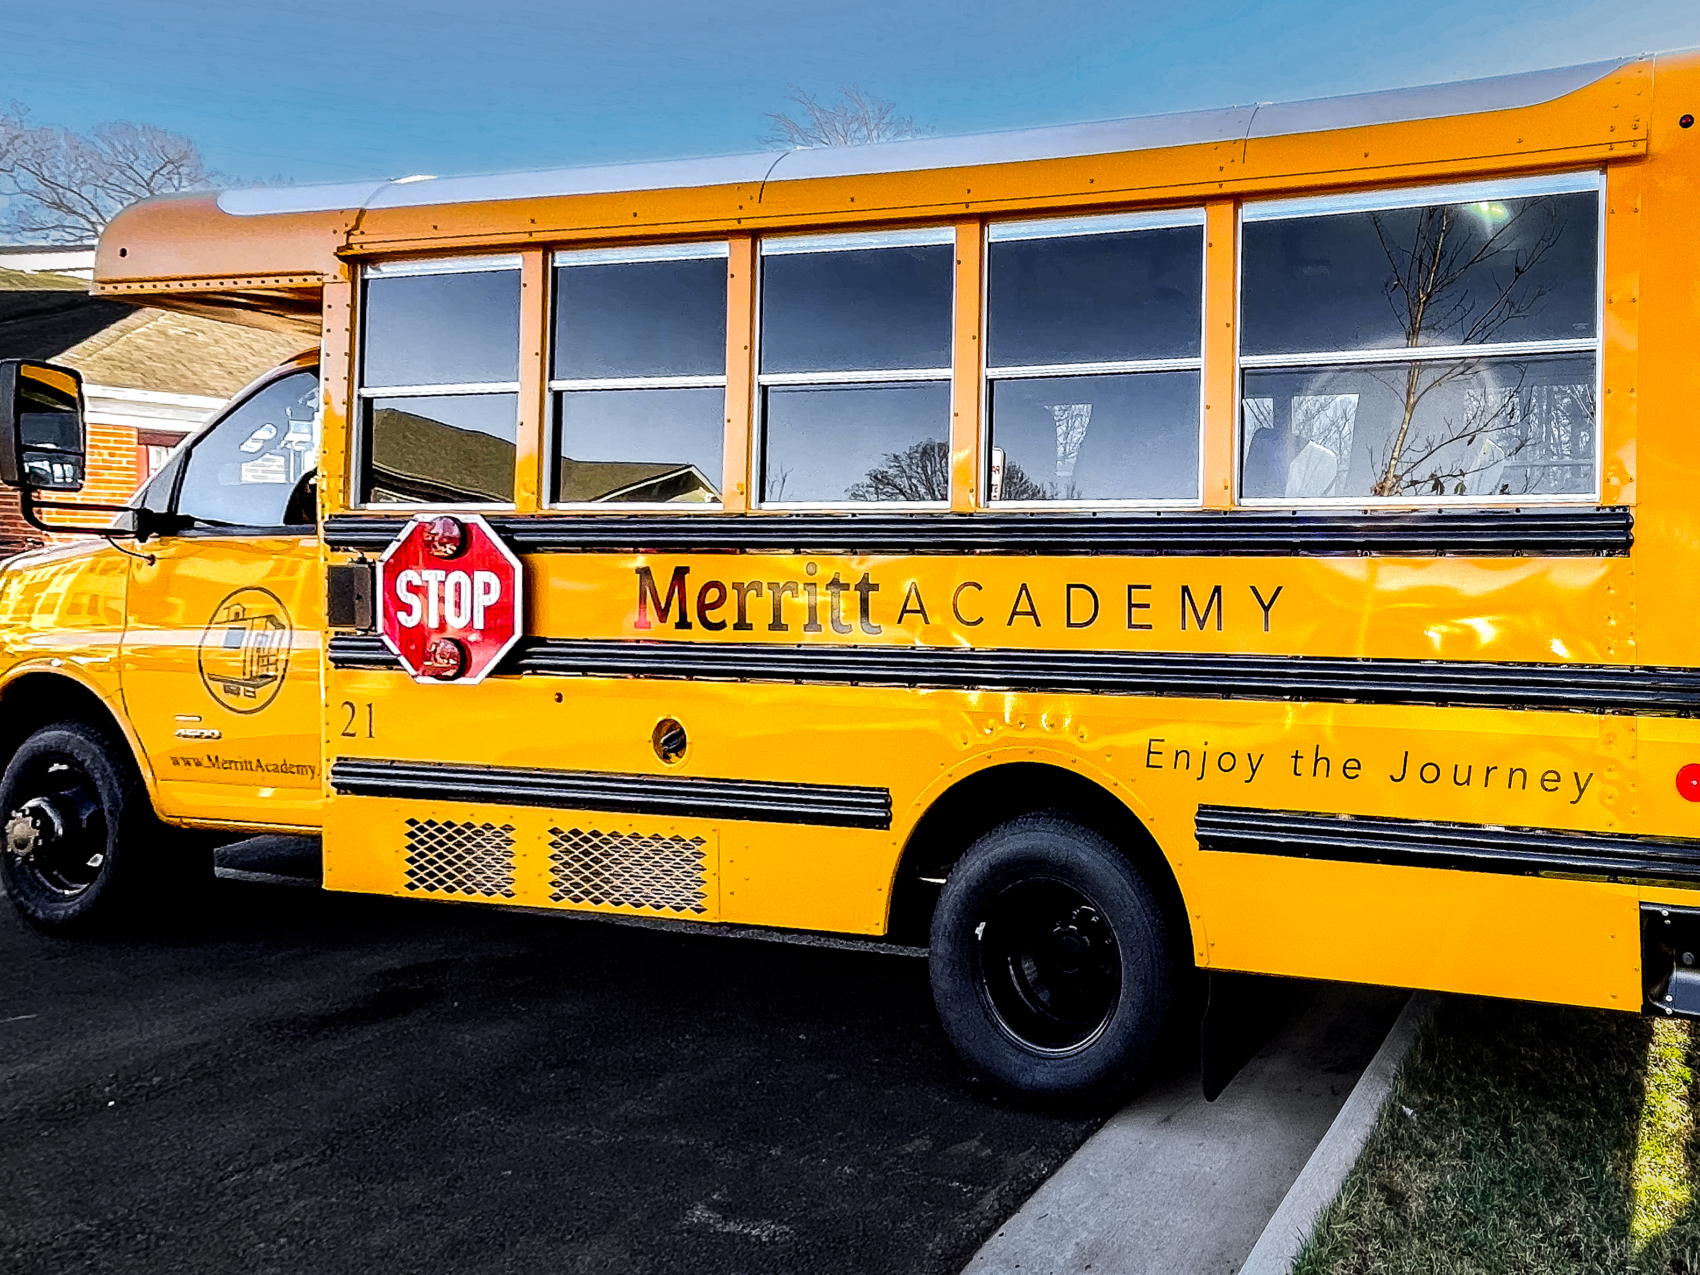 Merritt Academy bus for transportation